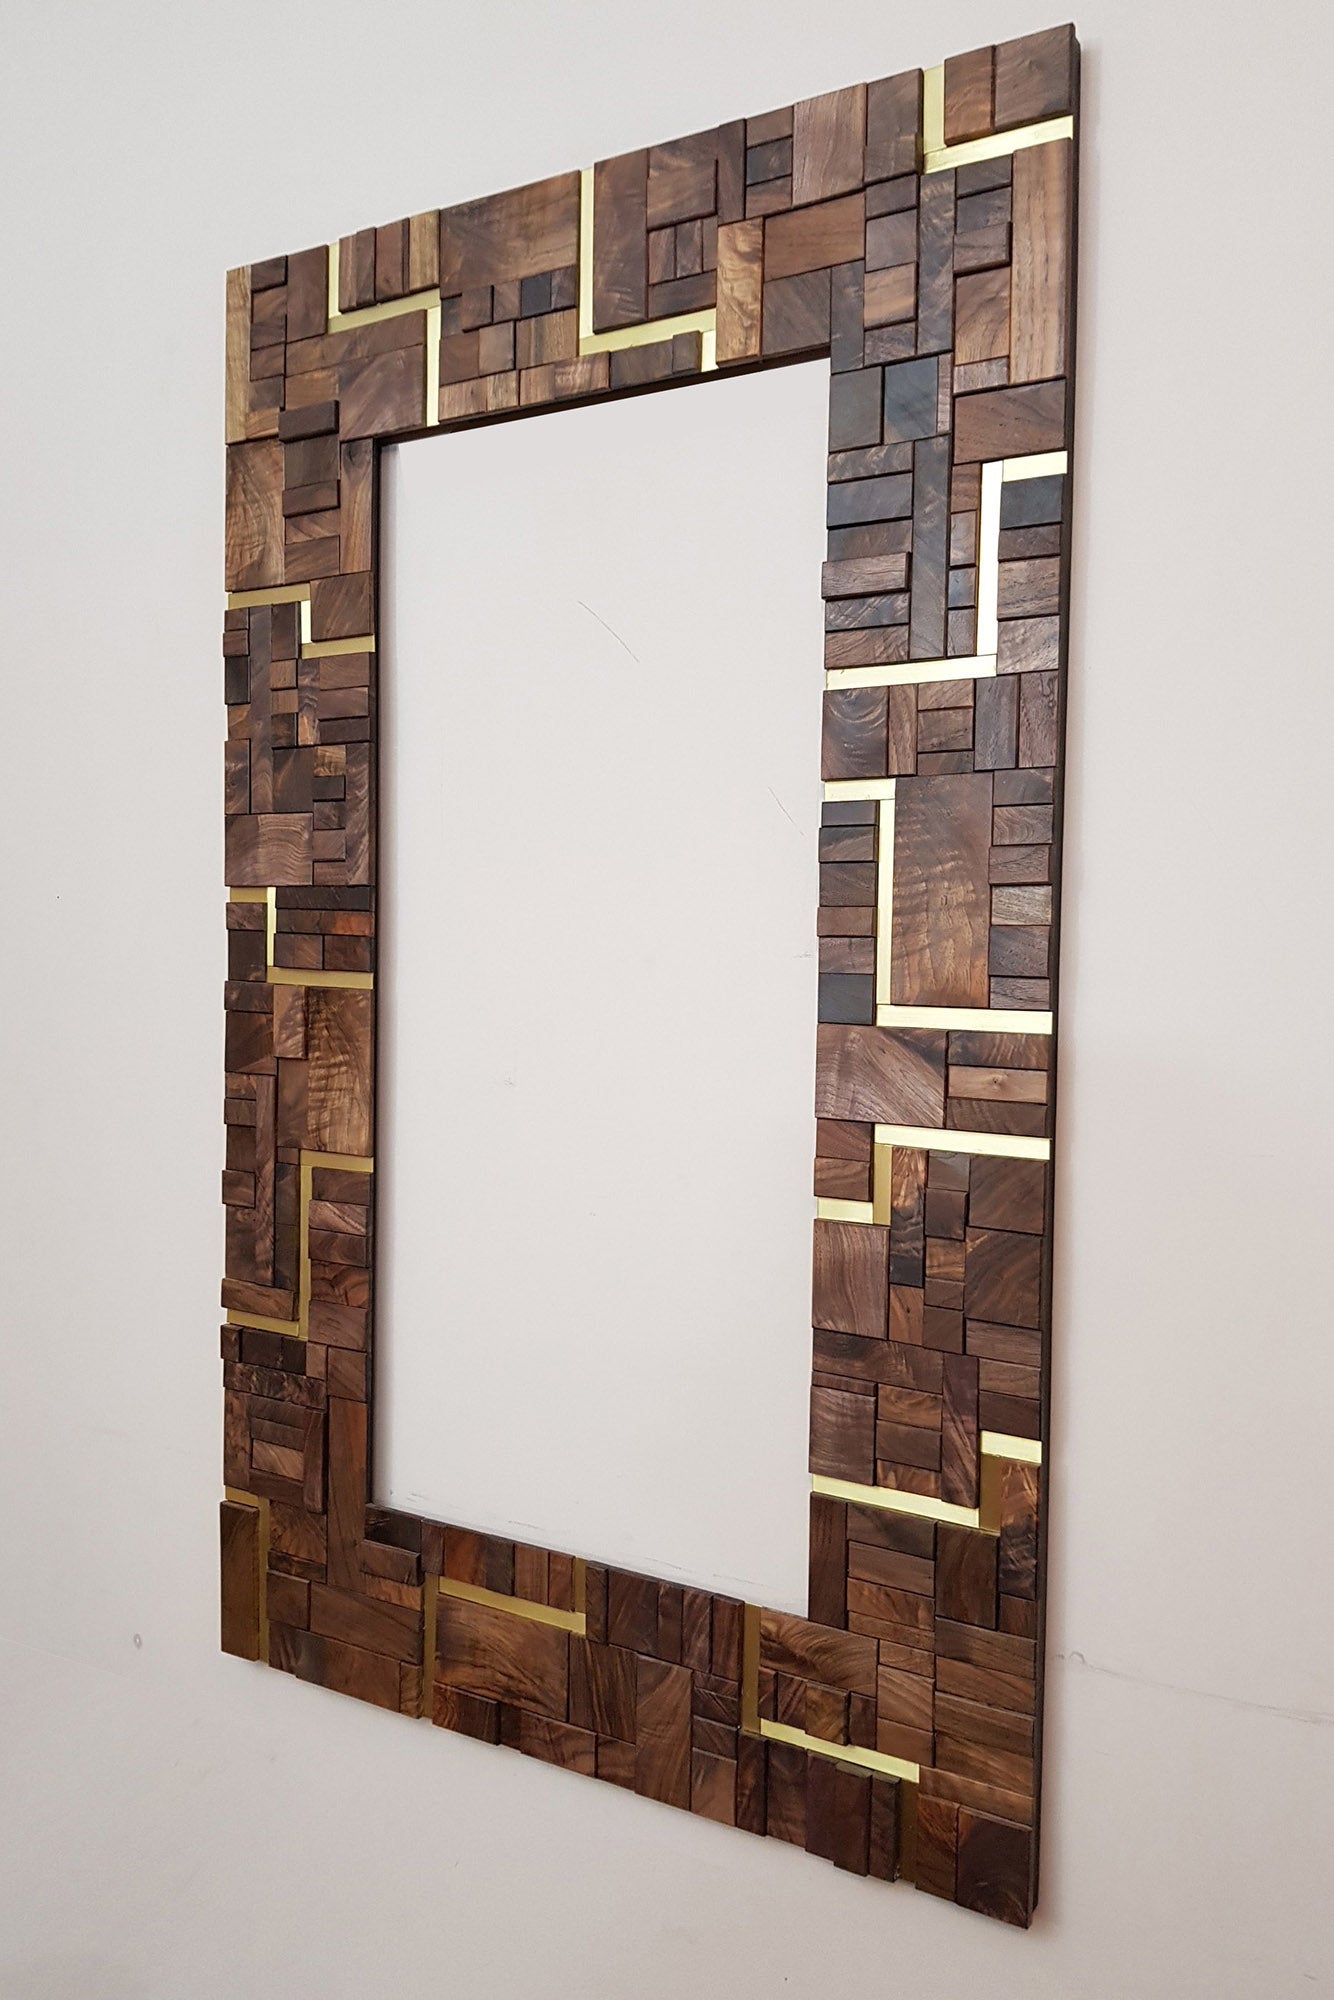 Large centrepiece statement mirror frame in figured walnut and brass